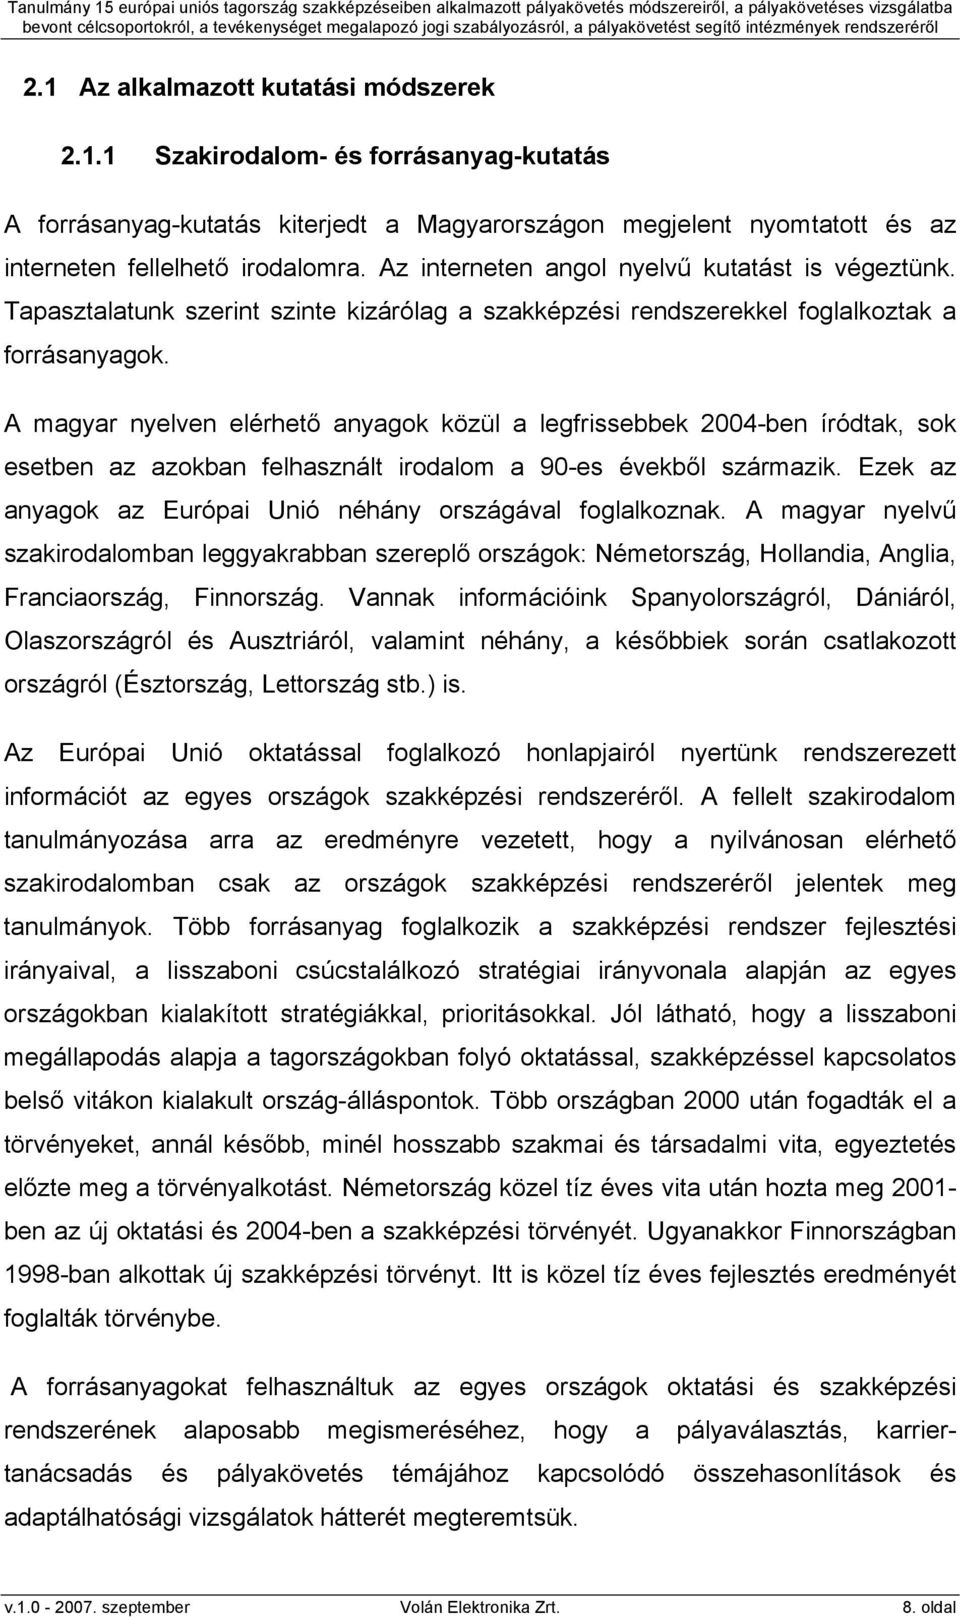 A magyar nyelven elérhető anyagok közül a legfrissebbek 2004-ben íródtak, sok esetben az azokban felhasznált irodalom a 90-es évekből származik.